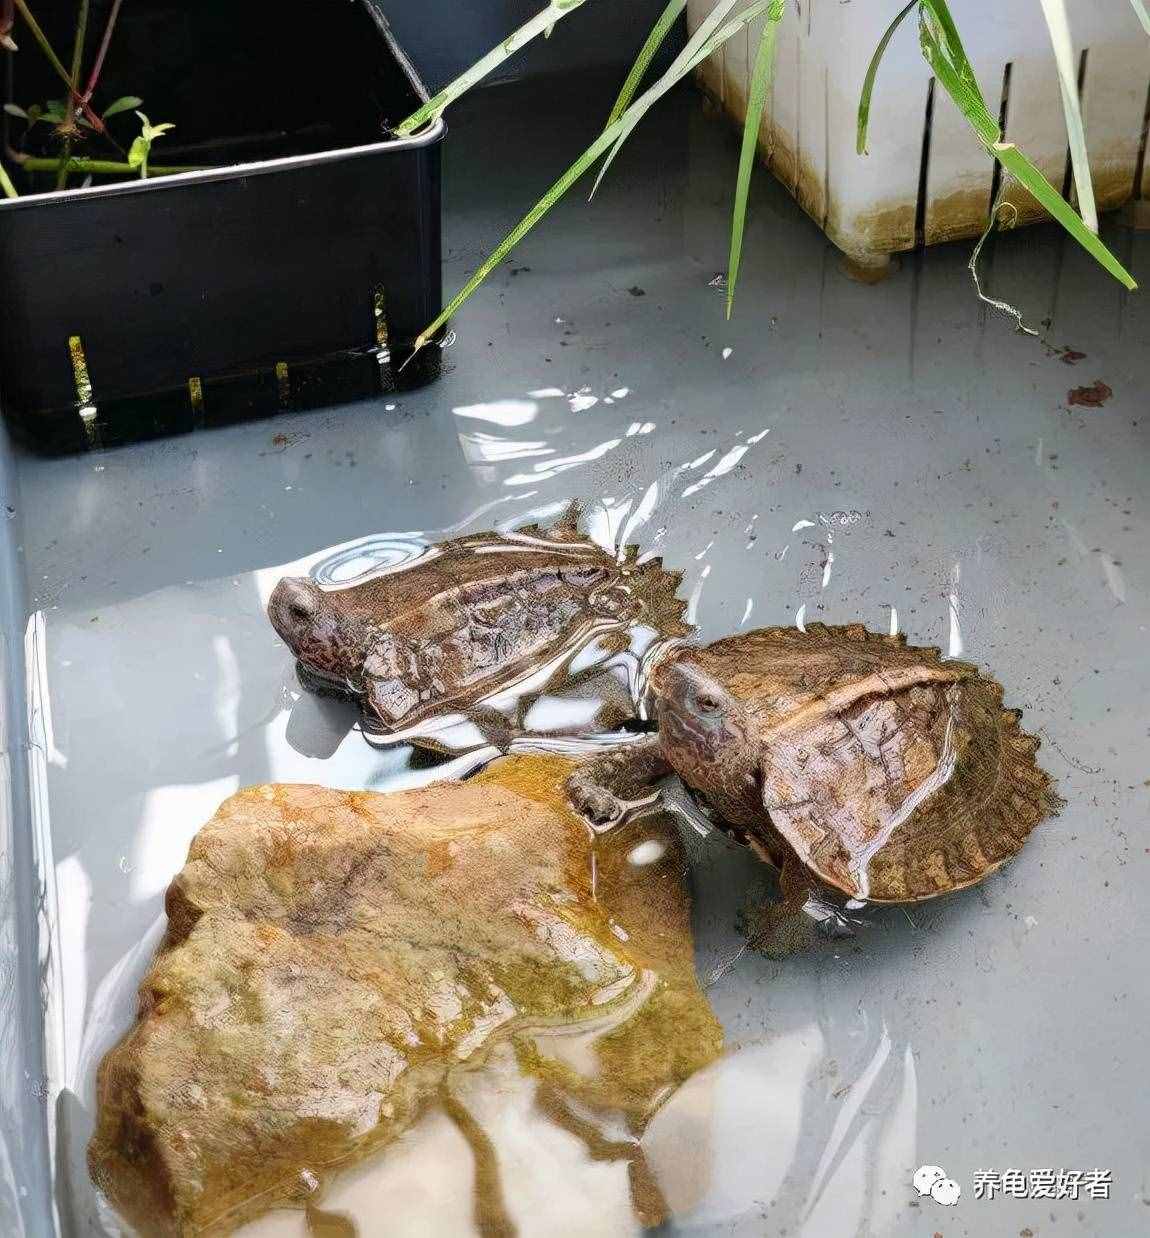 又到了龟不吃东西不下水的季节了，没有好办法对付它？